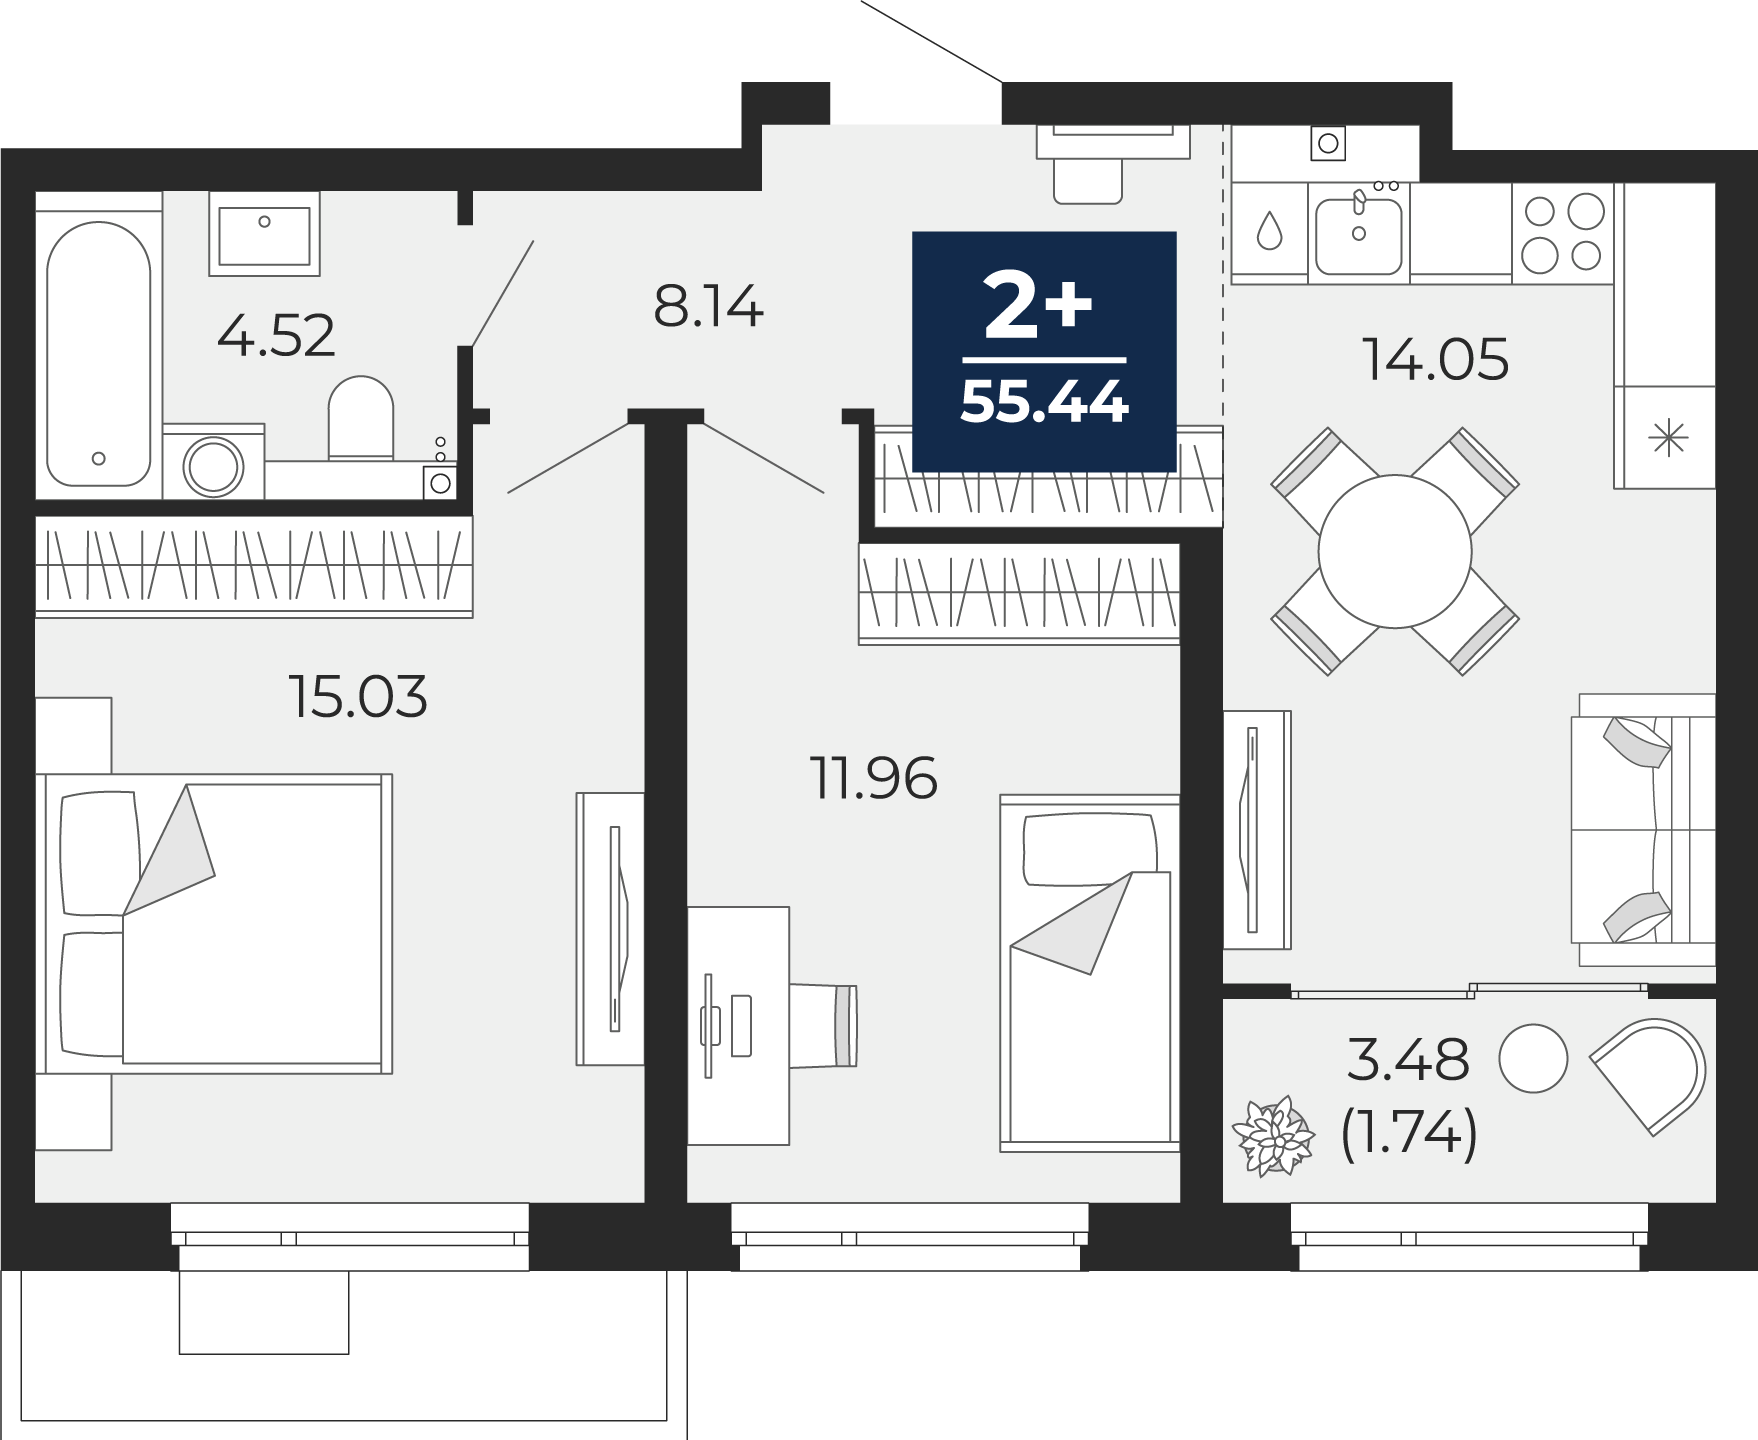 Квартира № 127, 2-комнатная, 55.44 кв. м, 2 этаж